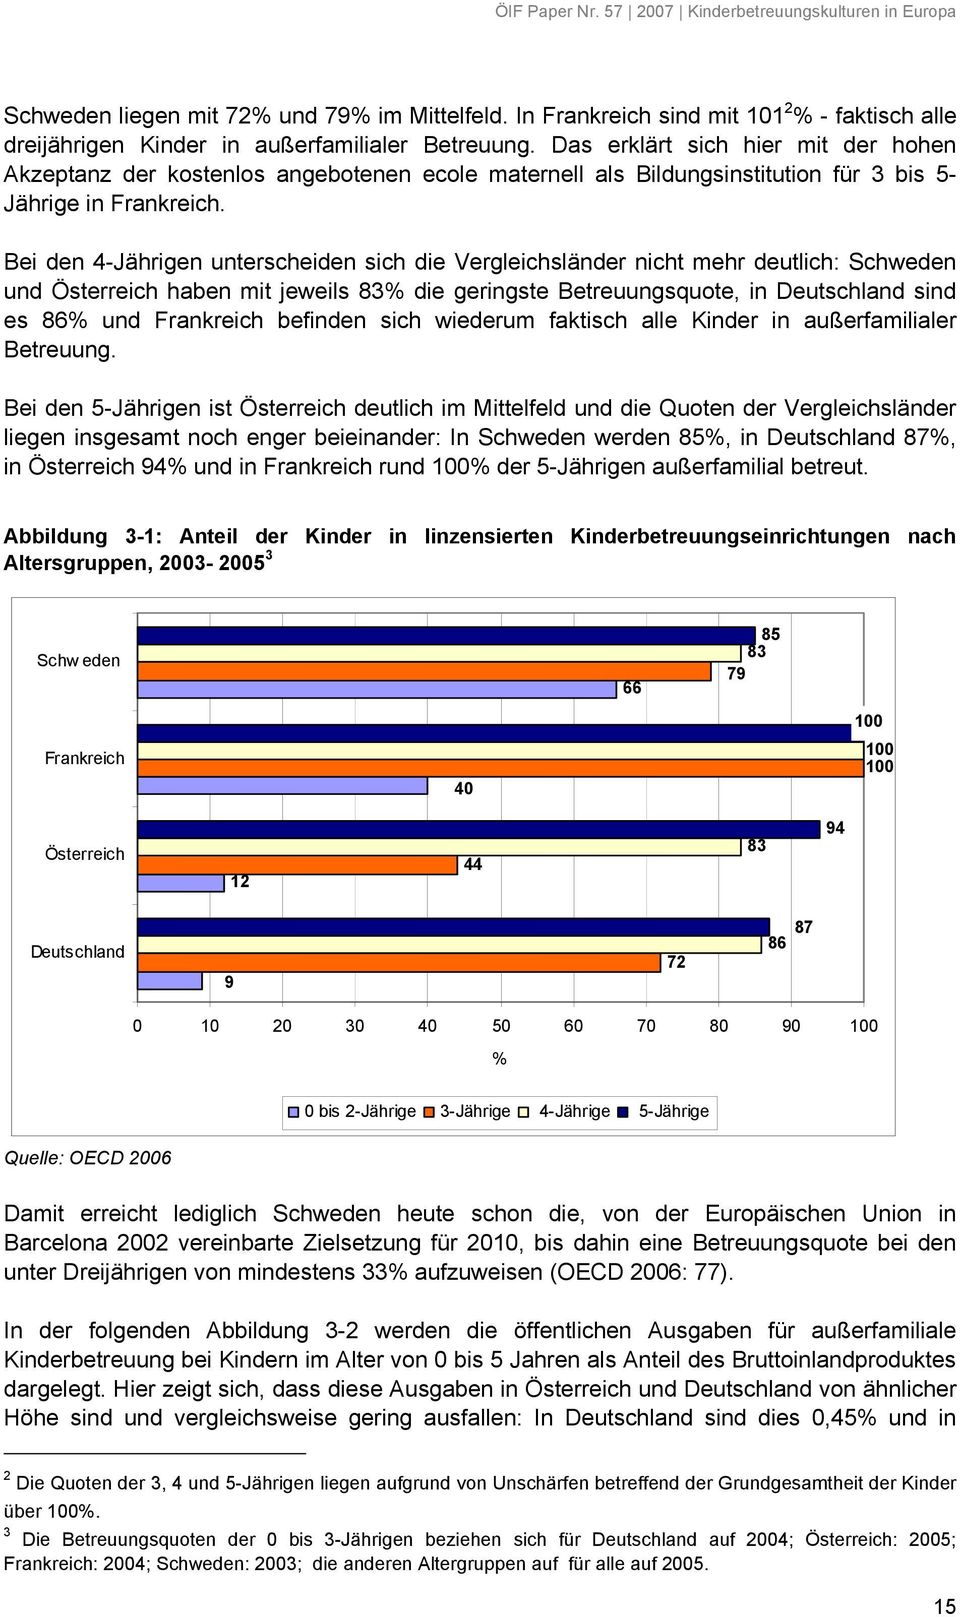 Bei den 4-Jährigen unterscheiden sich die Vergleichsländer nicht mehr deutlich: Schweden und Österreich haben mit jeweils 83% die geringste Betreuungsquote, in Deutschland sind es 86% und Frankreich